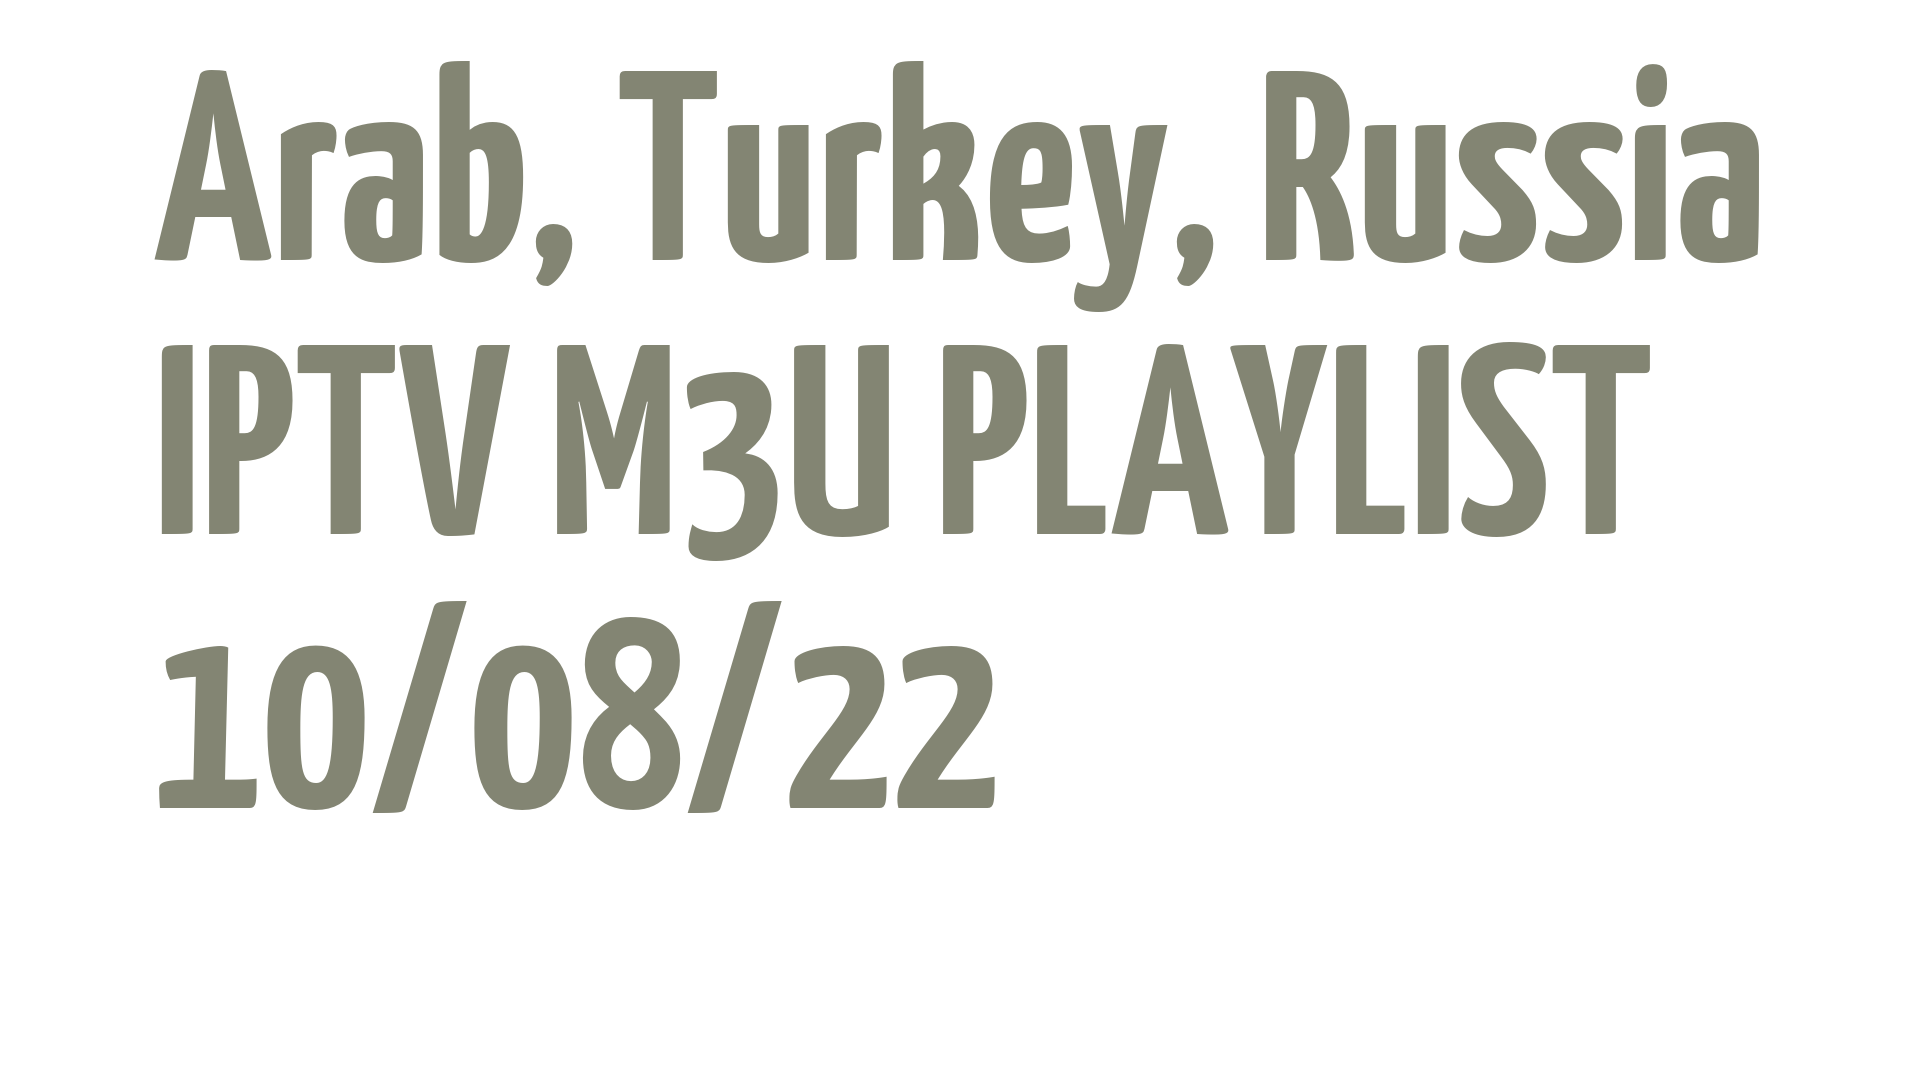 ARAB TURKEY RUSSIA FREE IPTV LINKS M3U 10 AUGUST 2022